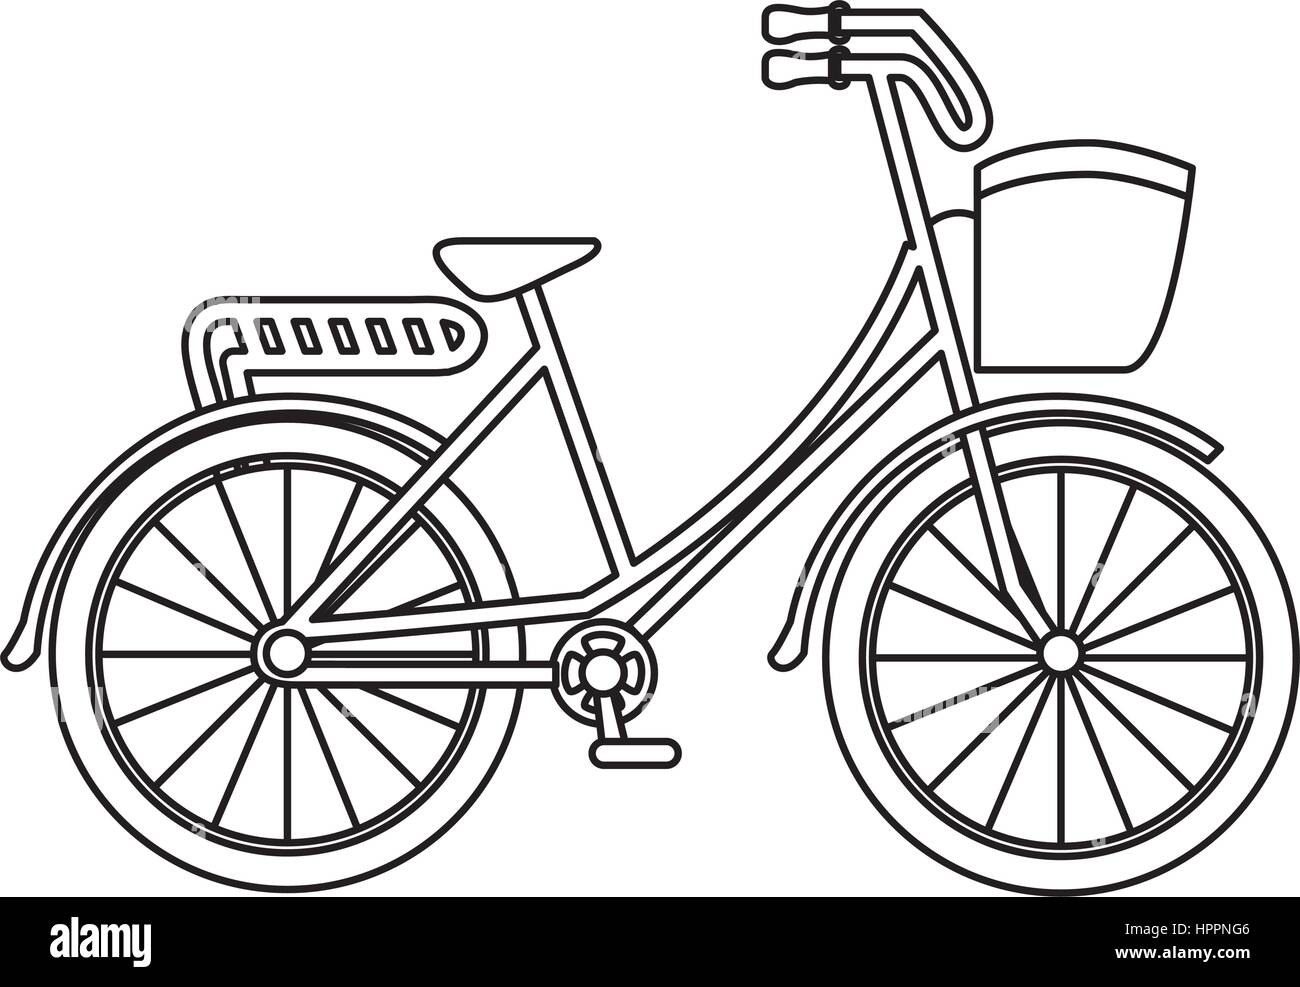 Disegno Della Bicicletta Immagini senza sfondo e Foto Stock ritagliate -  Alamy